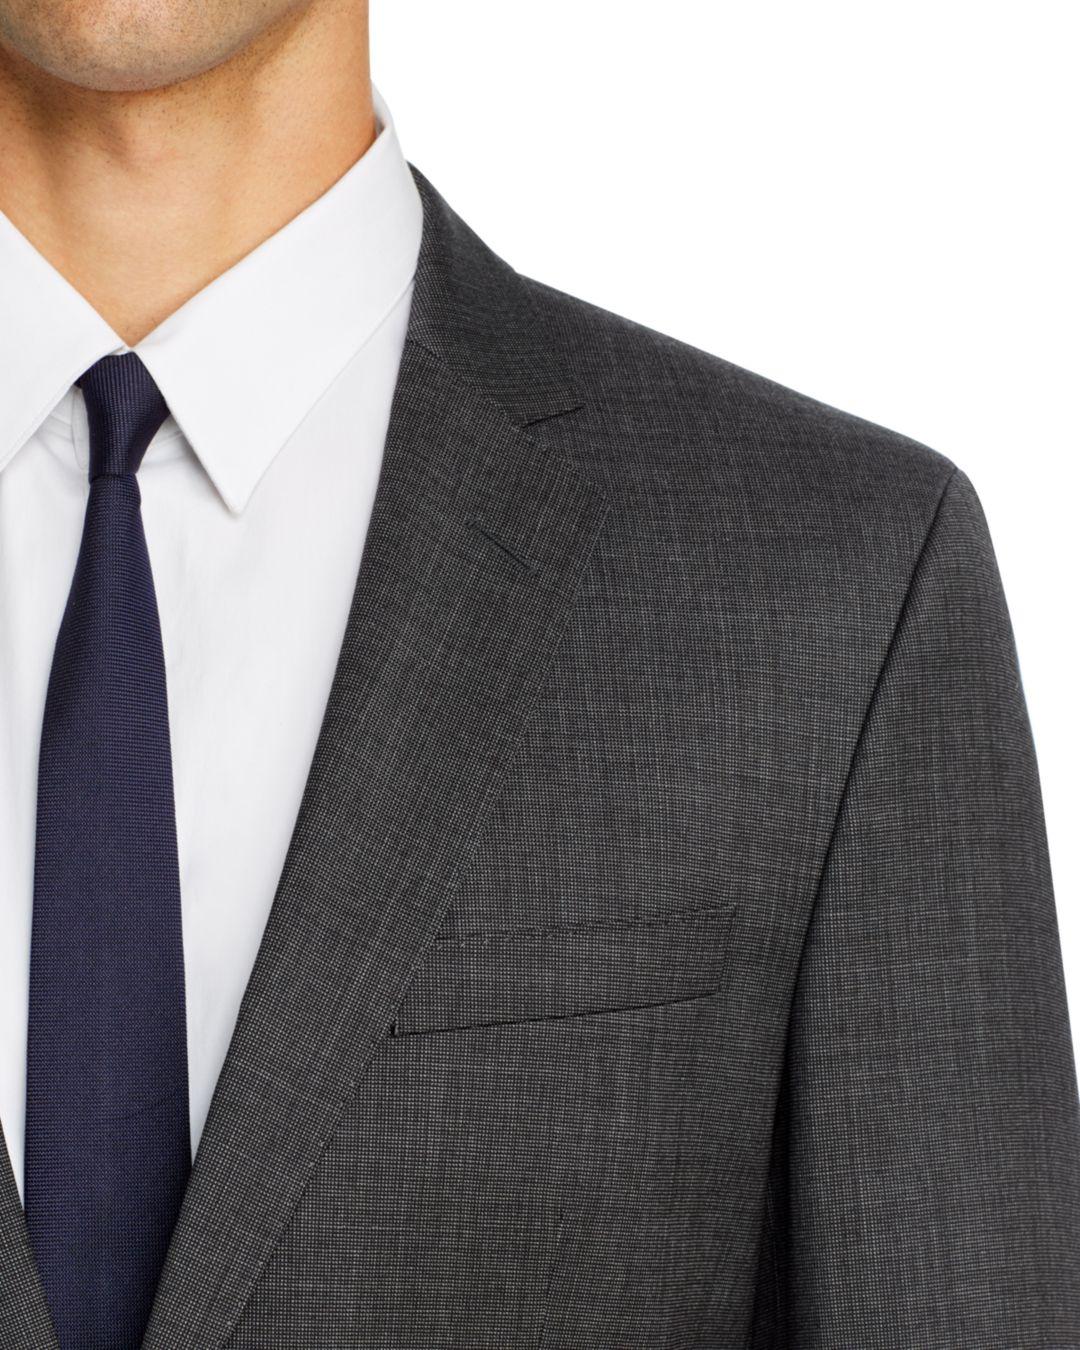 BOSS by HUGO BOSS Wool Huge/genius Birdseye Weave Slim Fit Suit in Charcoal  (Gray) for Men - Lyst